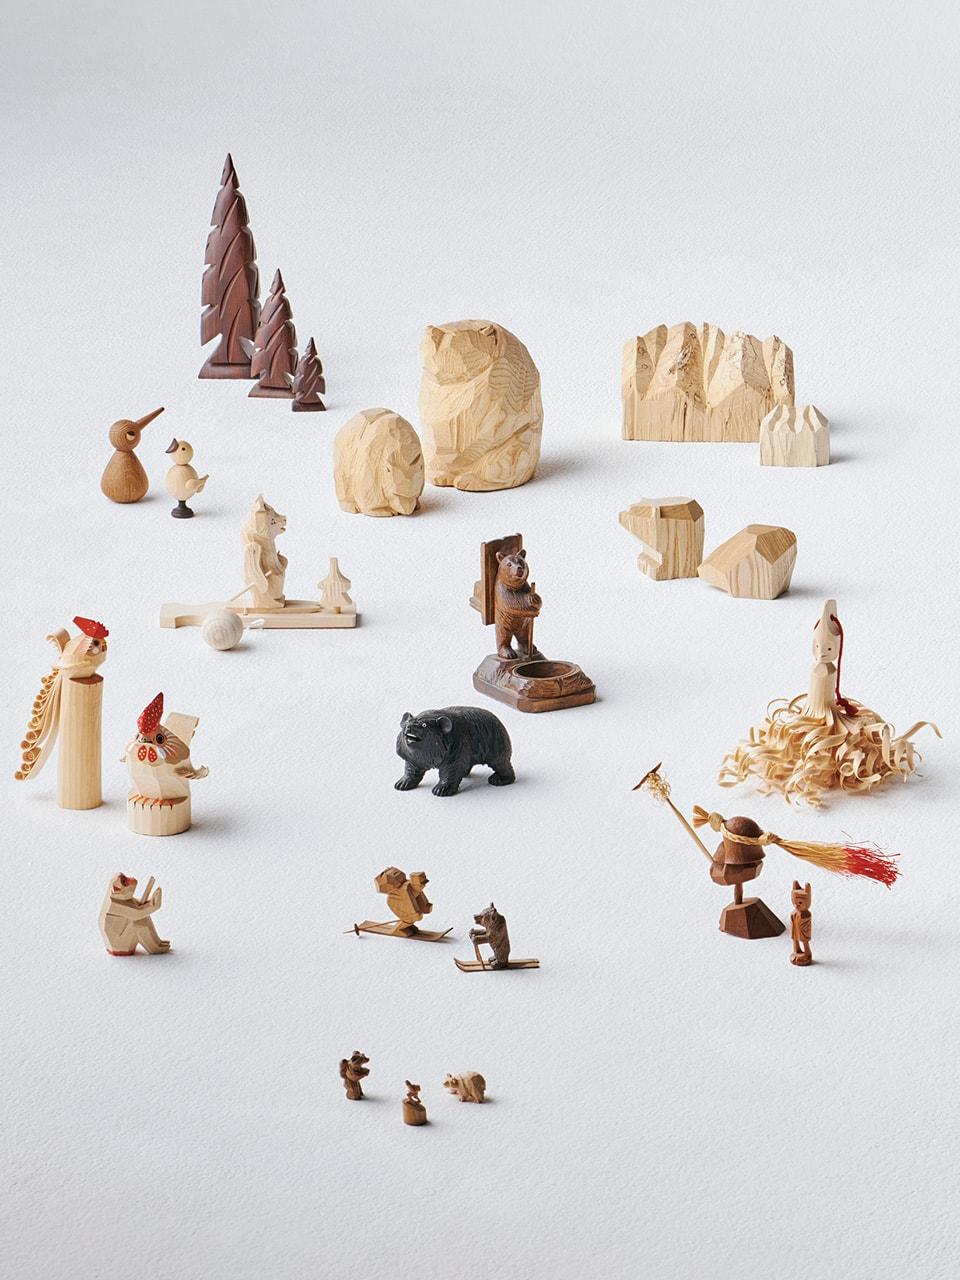 金子夏子がこっそり集めているもの「大好きな山に親しむ、木彫りの小さな置き物たち」